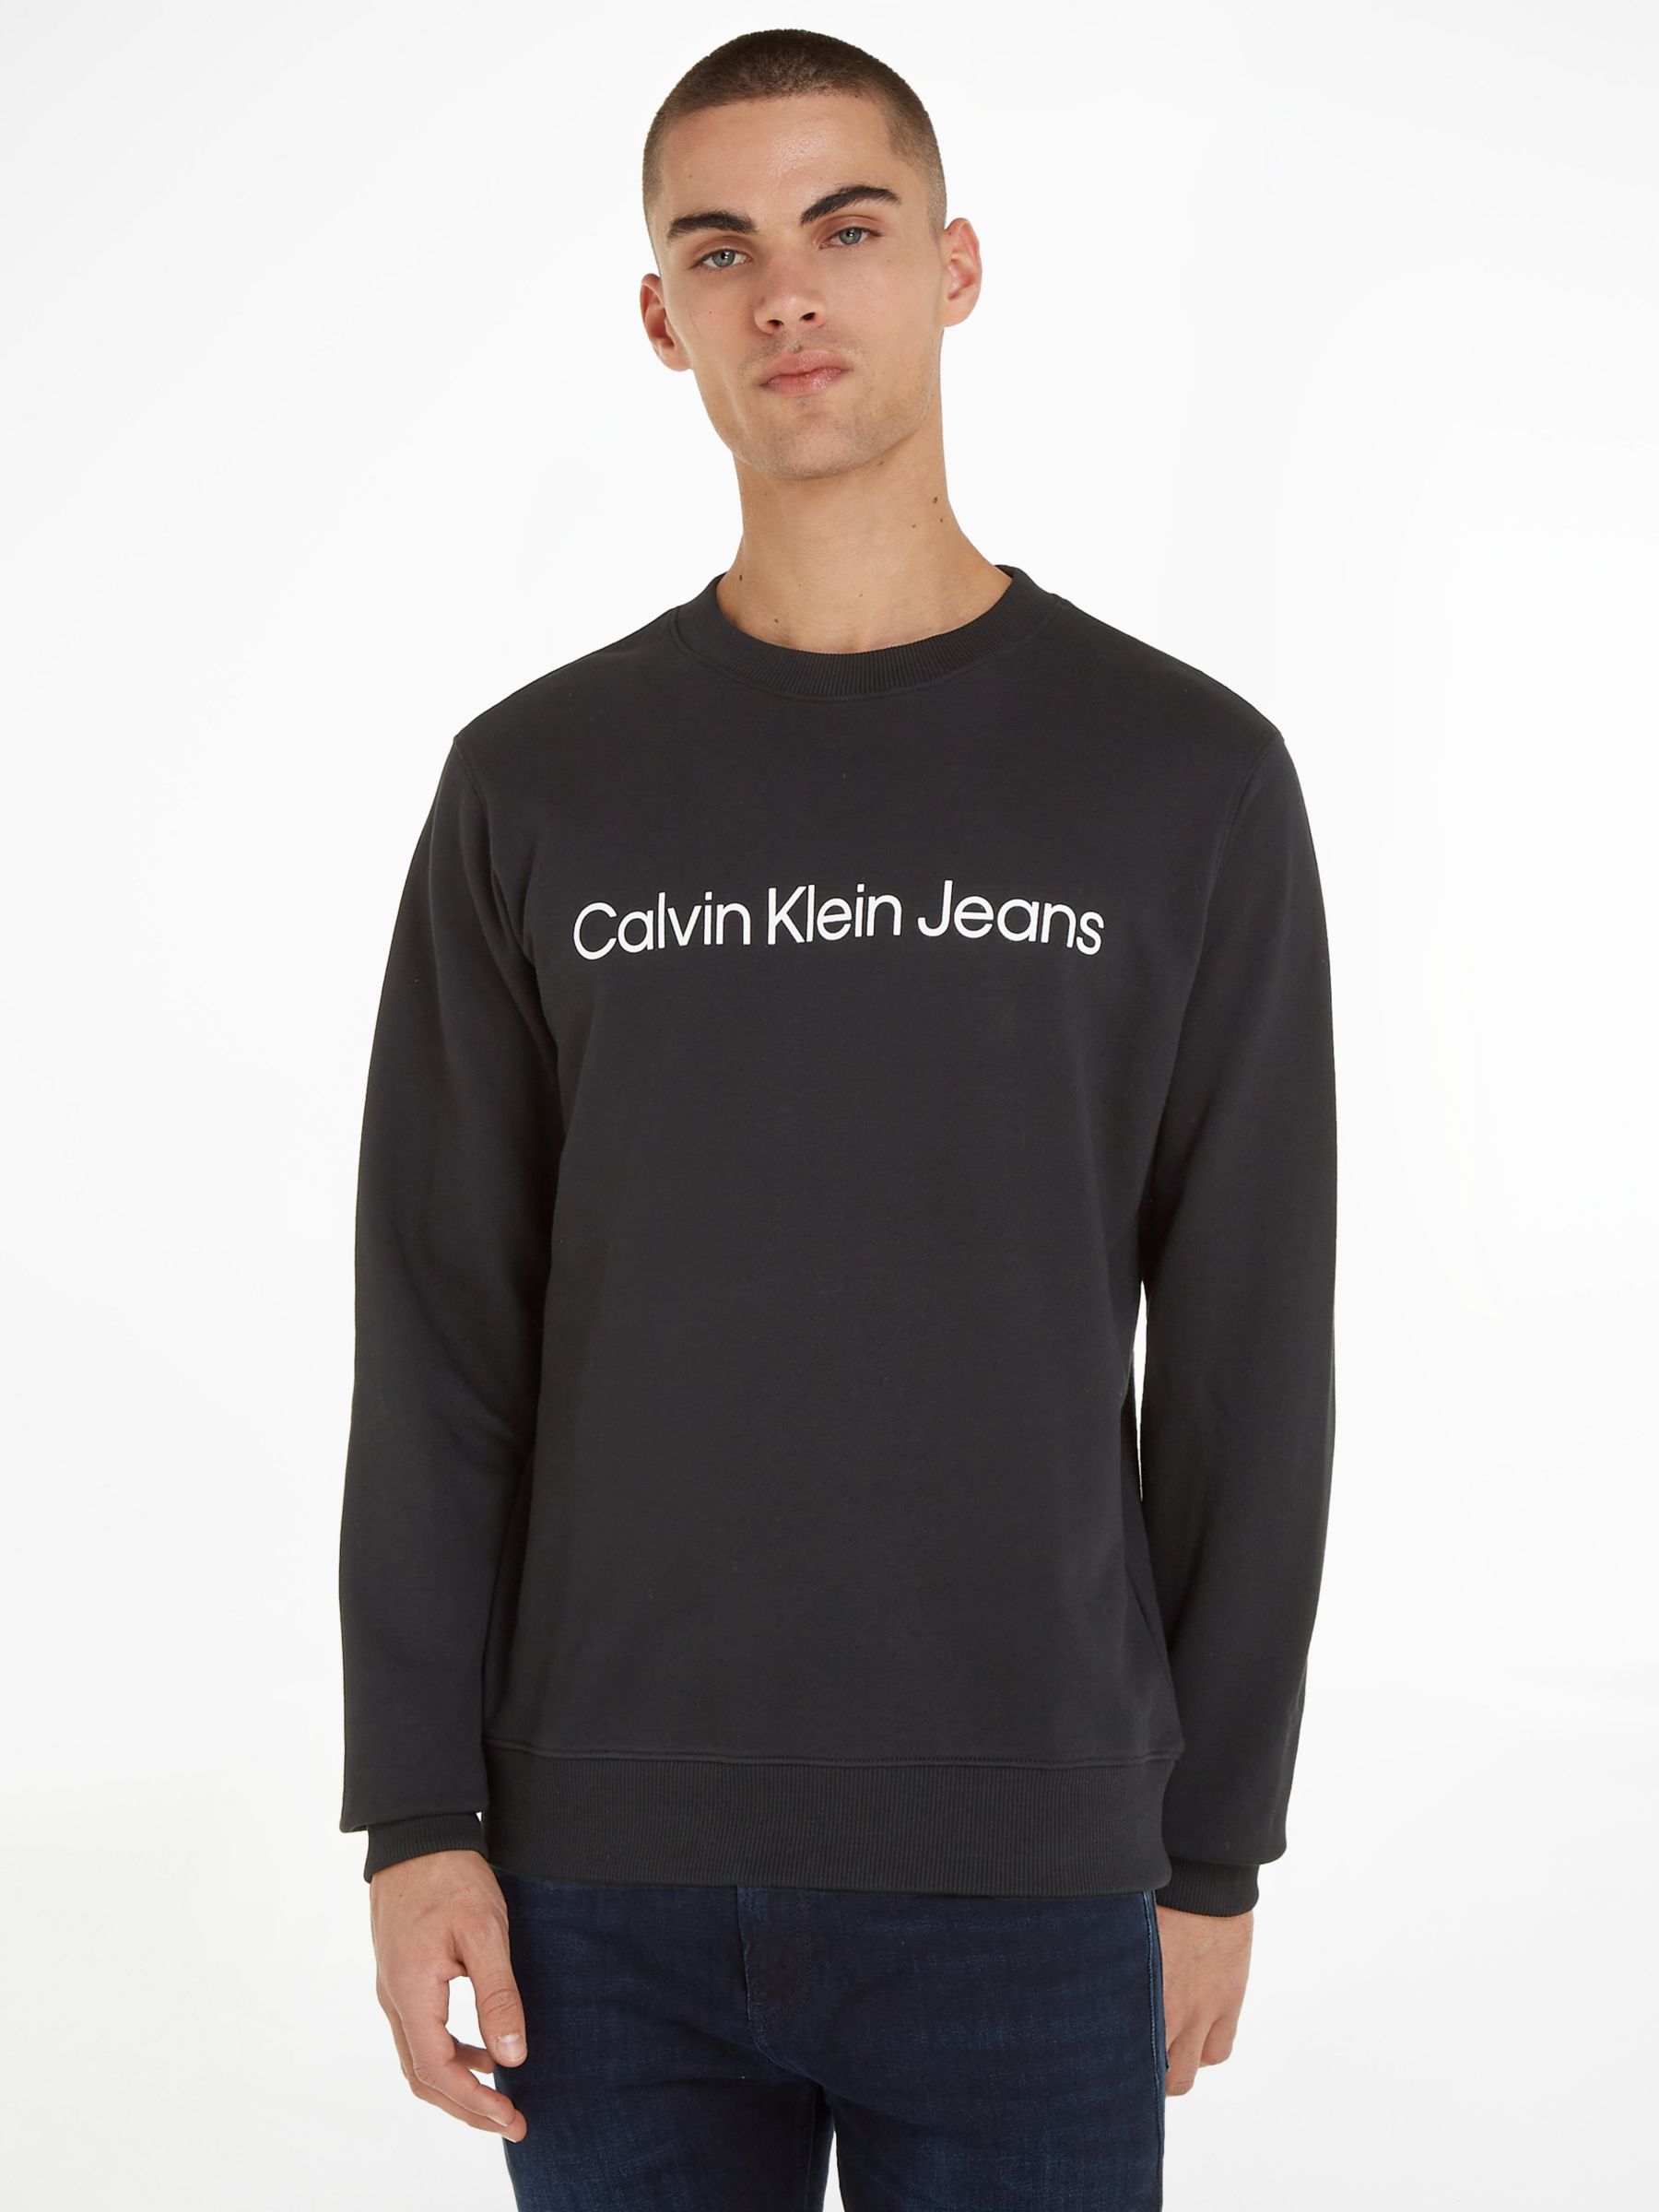 Calvin Klein Logo Sweatshirt, CK Black, M